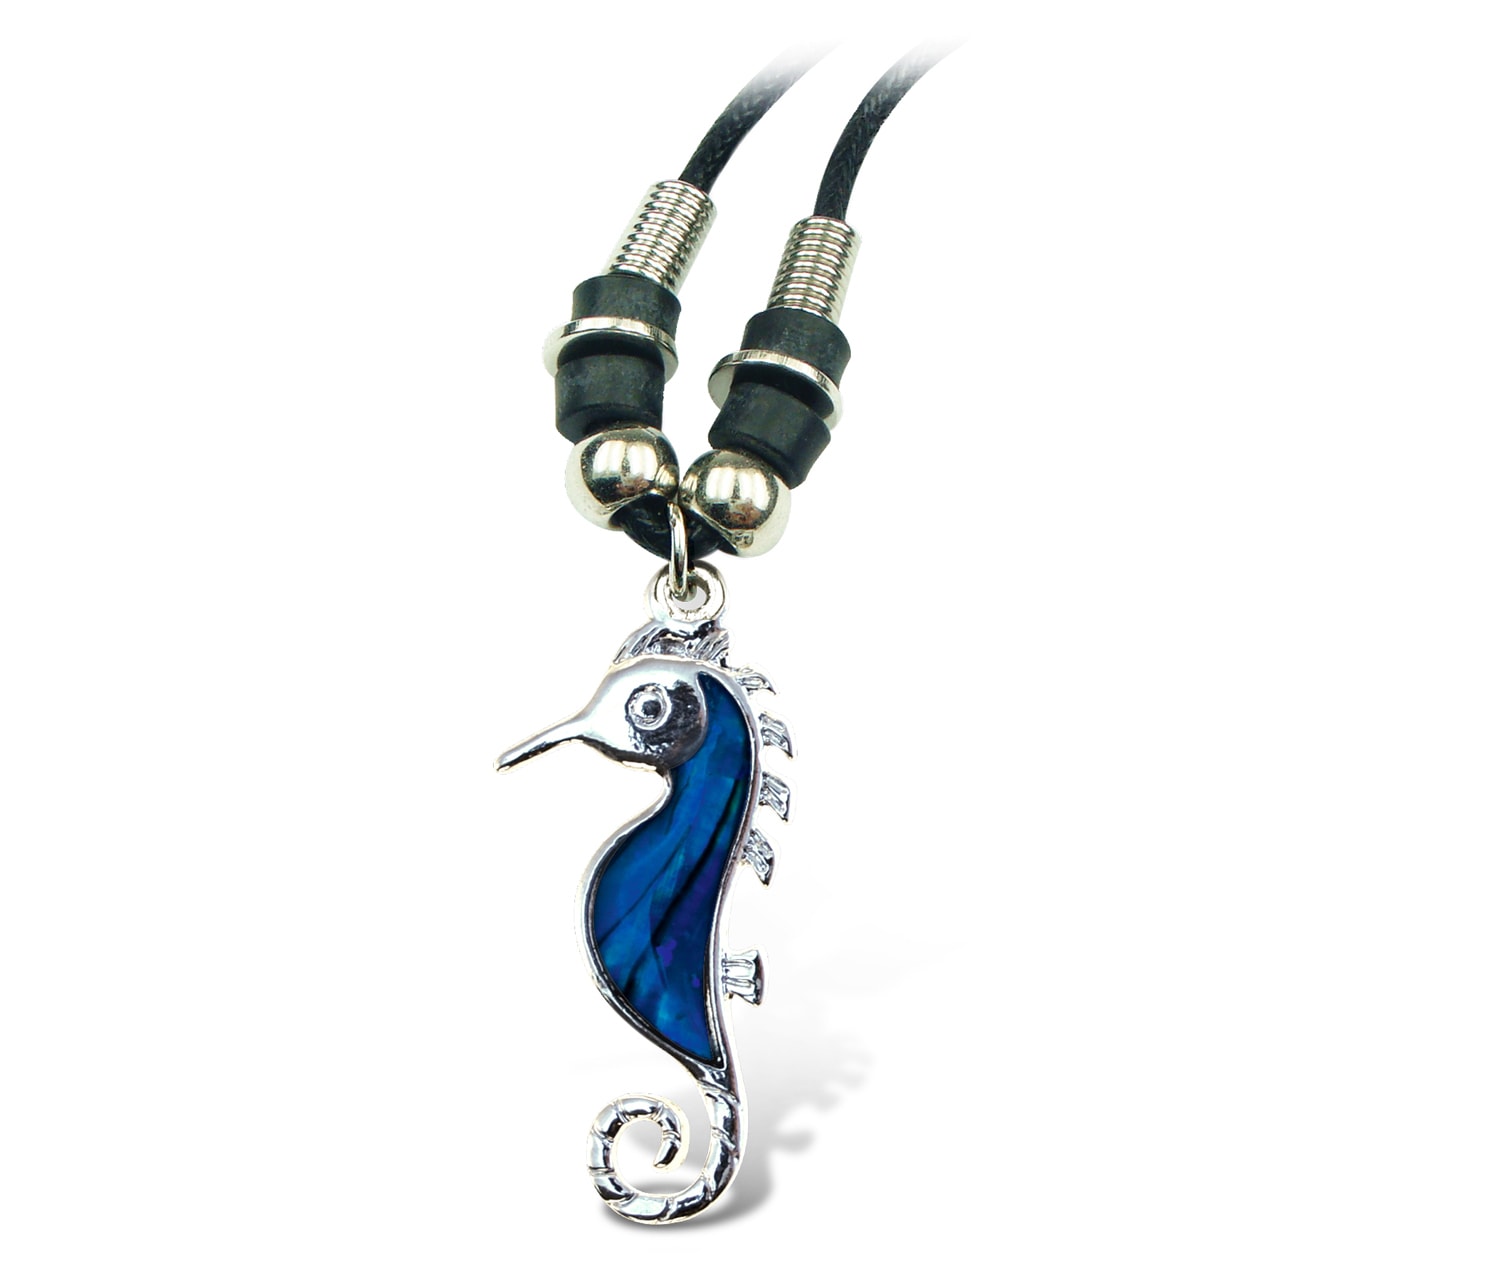 Necklace Wild Style Chain 18 Inch – Sea Horse – Aqua Jewelry